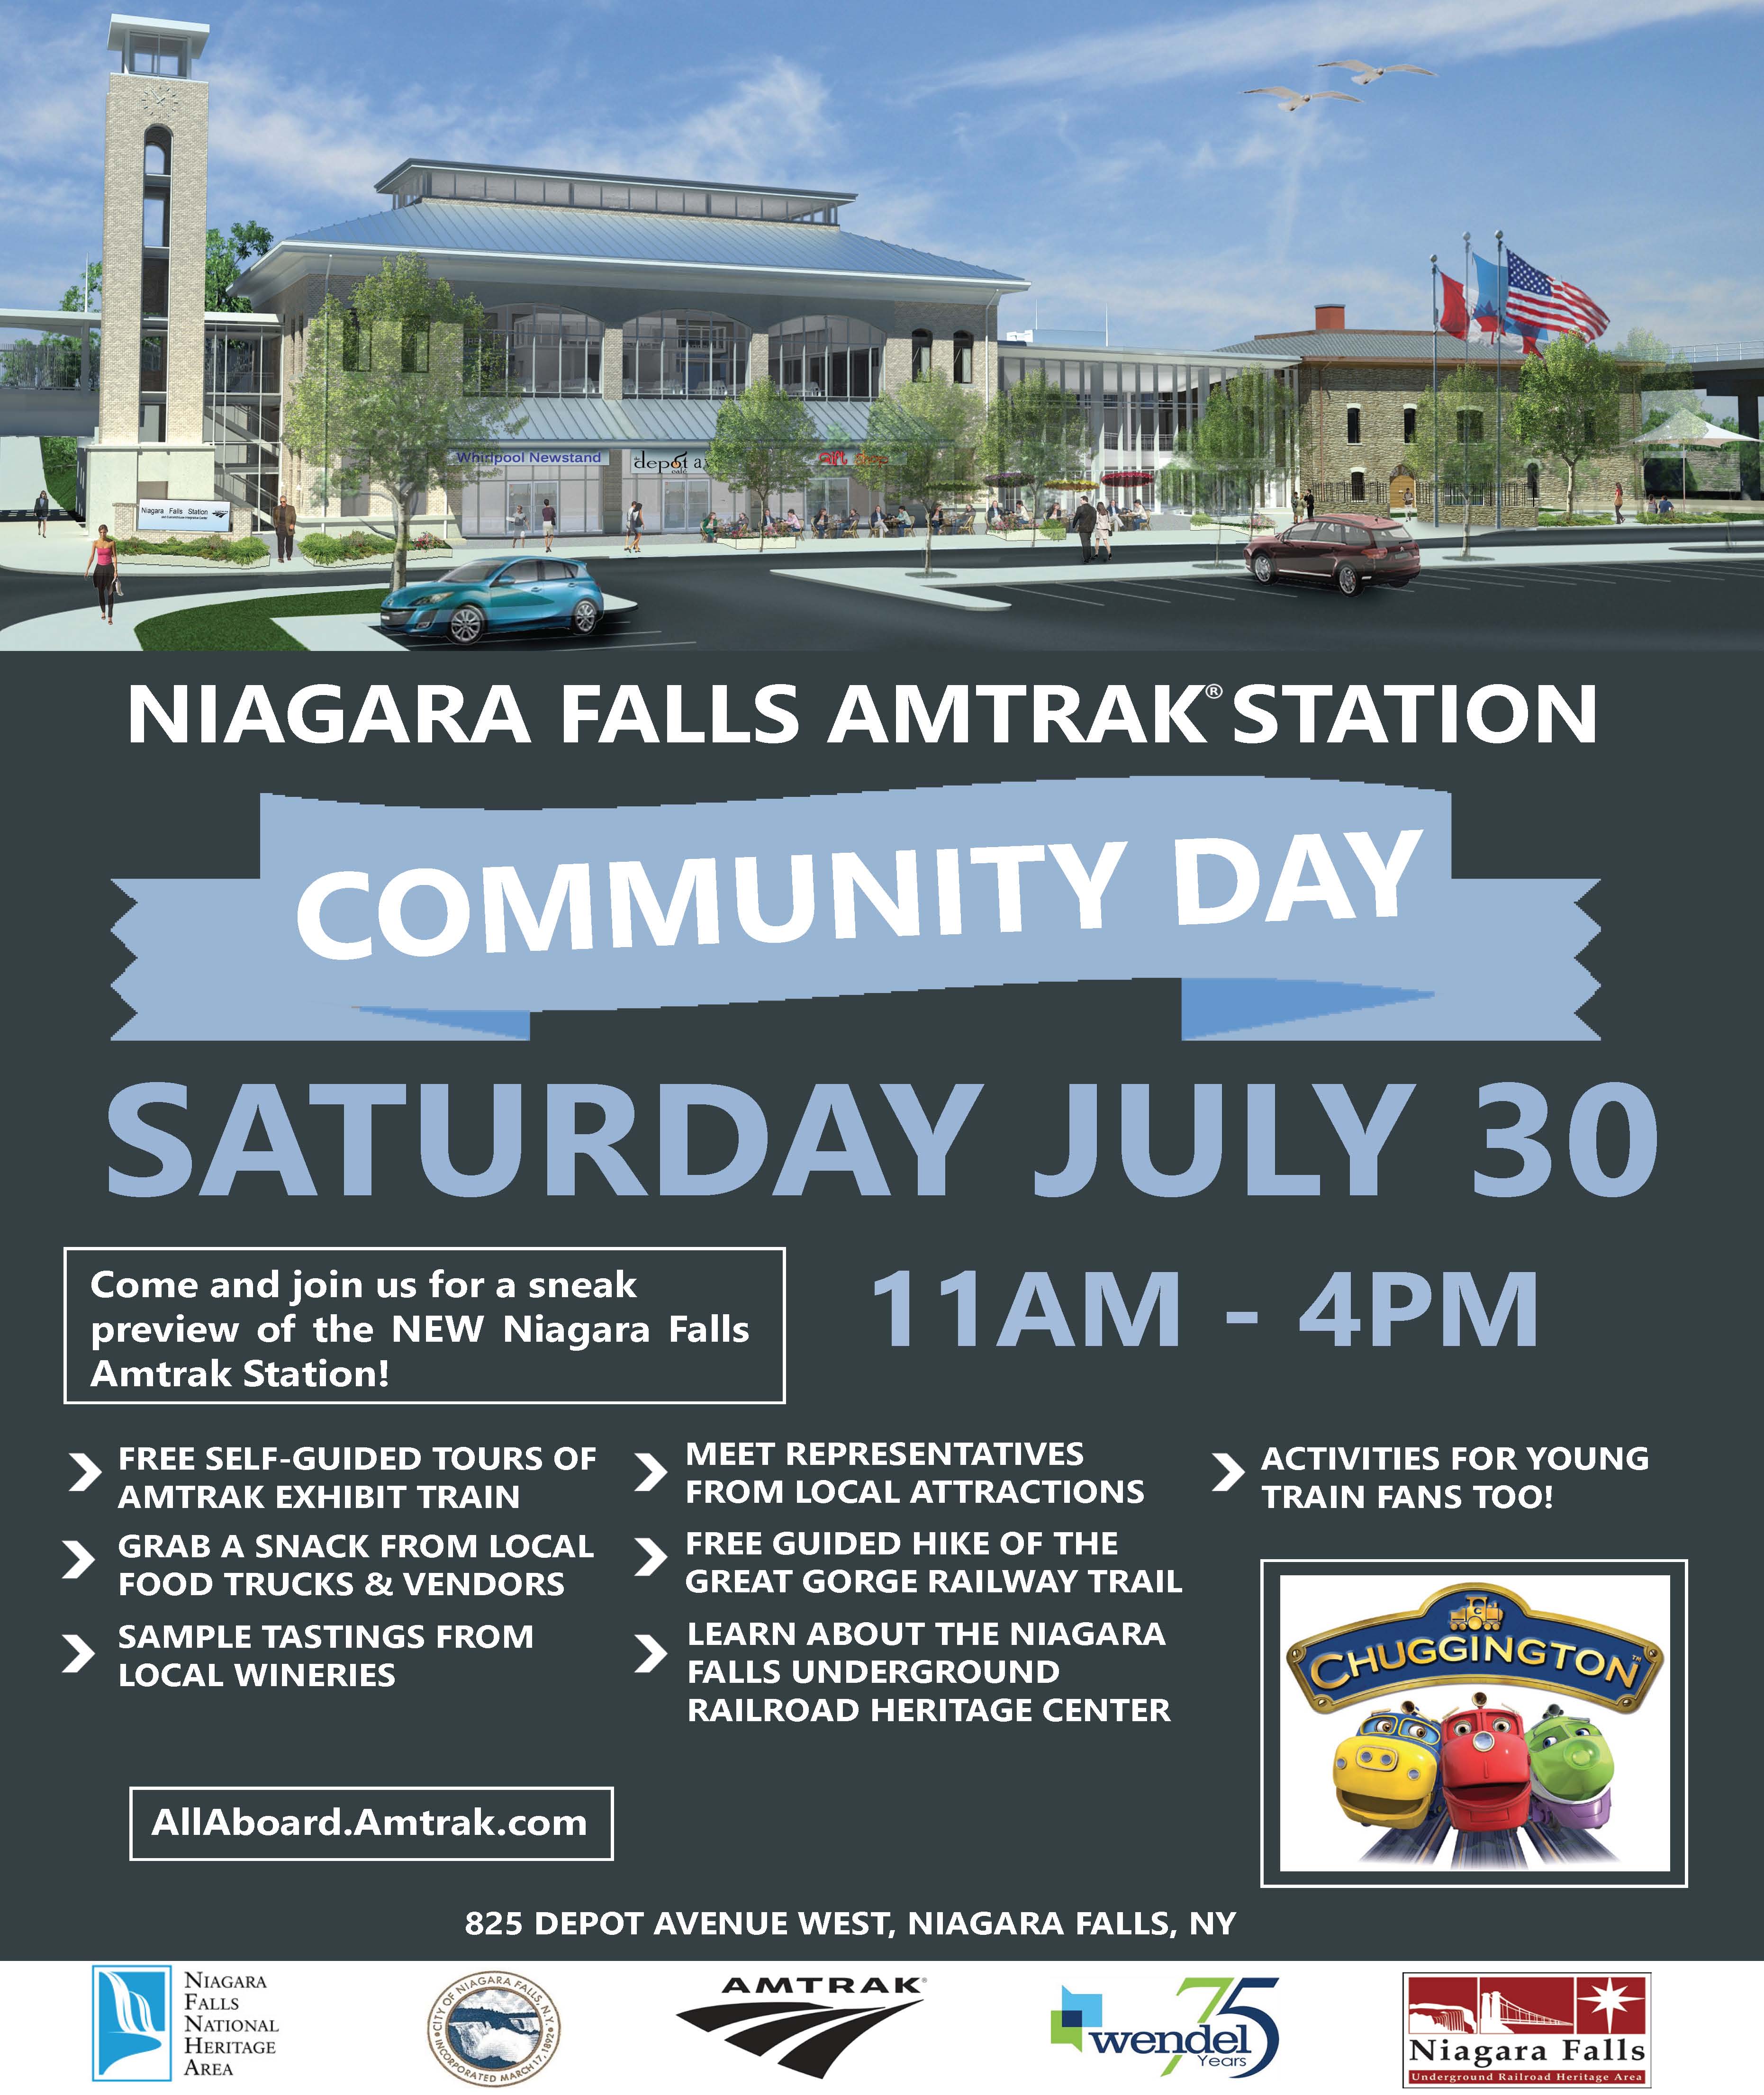 NiagaraFallsAmtrakStation - Community Day 7-30-16 final